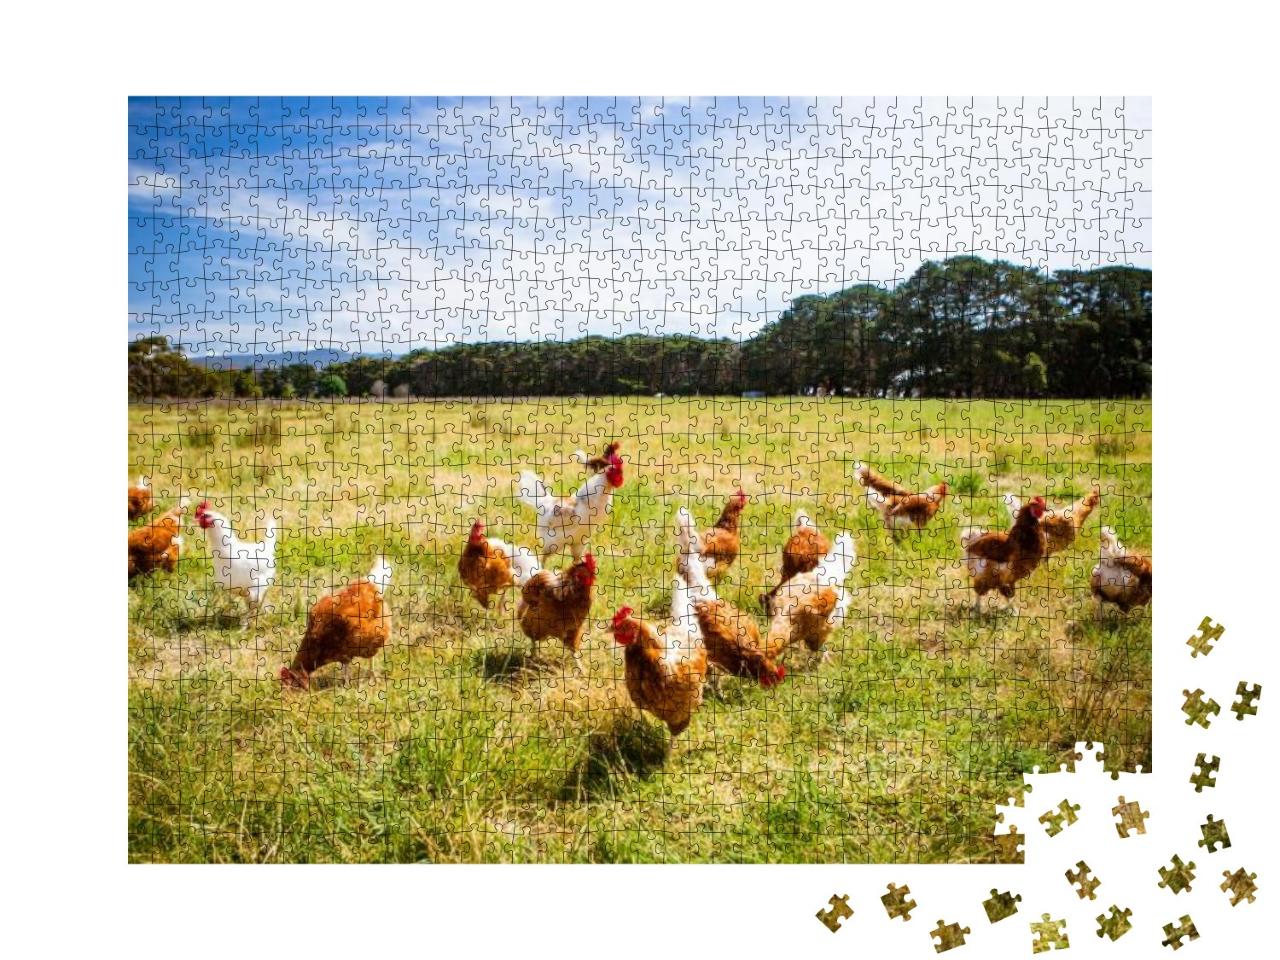 Puzzle 1000 Teile „Eine Hühnerherde läuft frei, Australien“